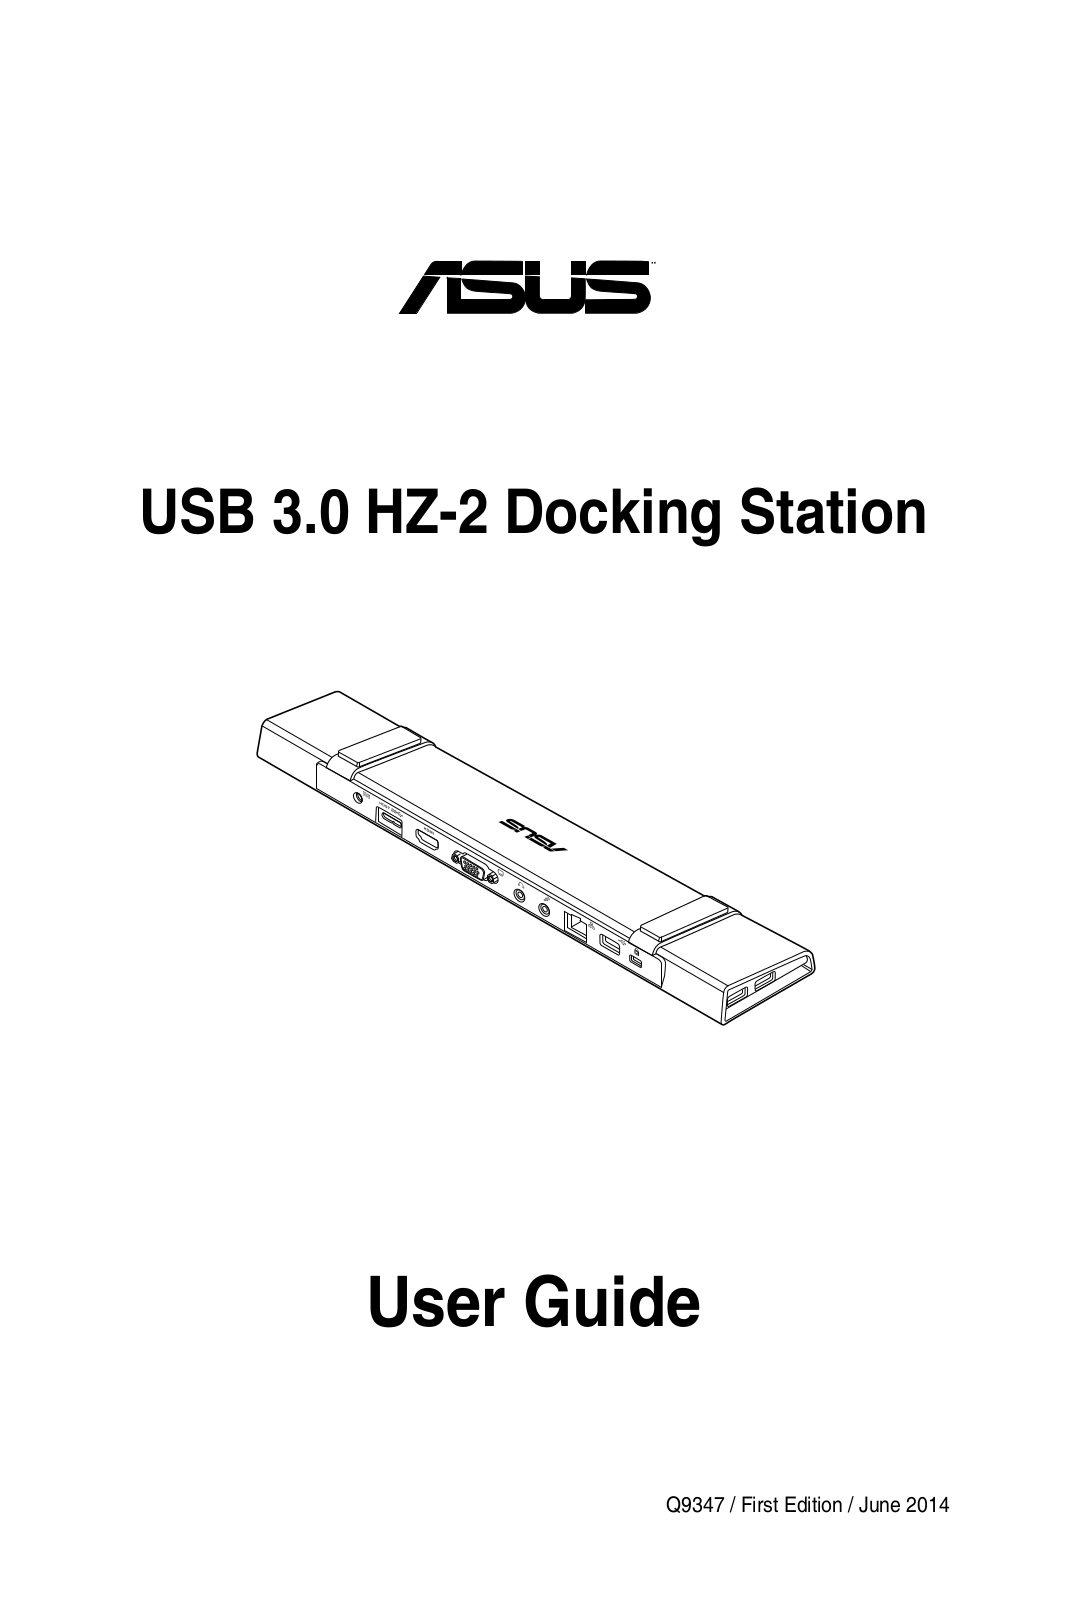 ASUS HZ-2, Q9347 User Manual